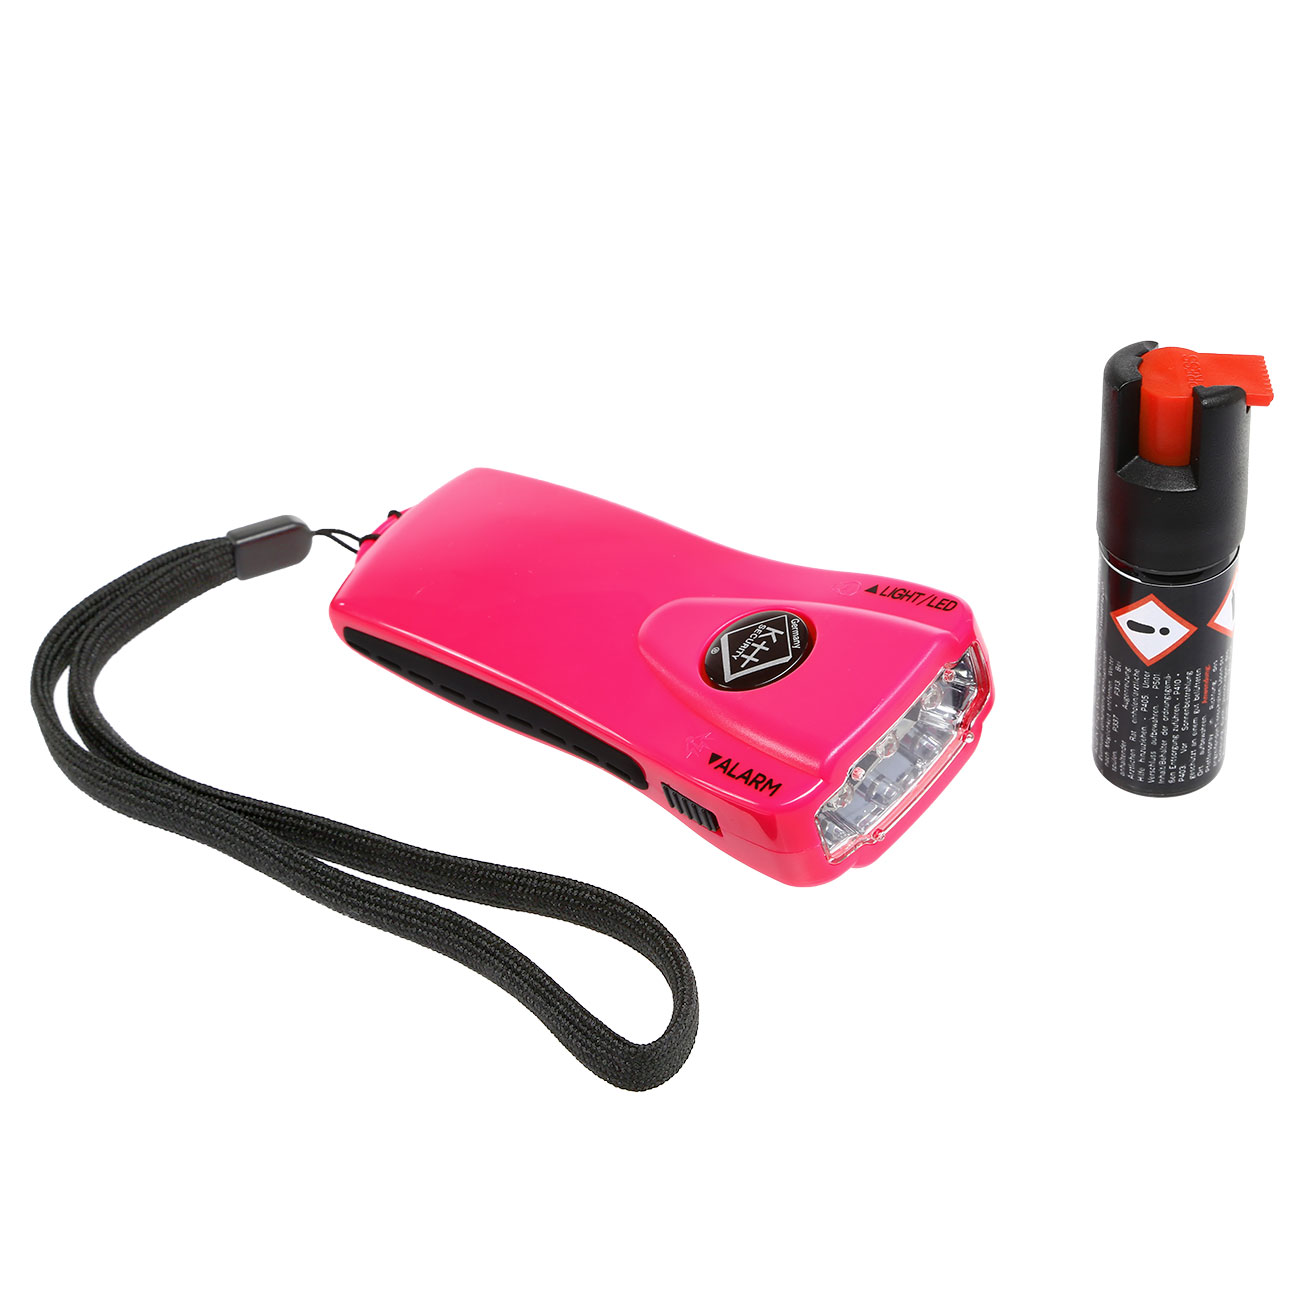 Geschenkset mit Pepper Jet Pocket Pfefferspray und Alarm LED-Taschenlampe pink Bild 2